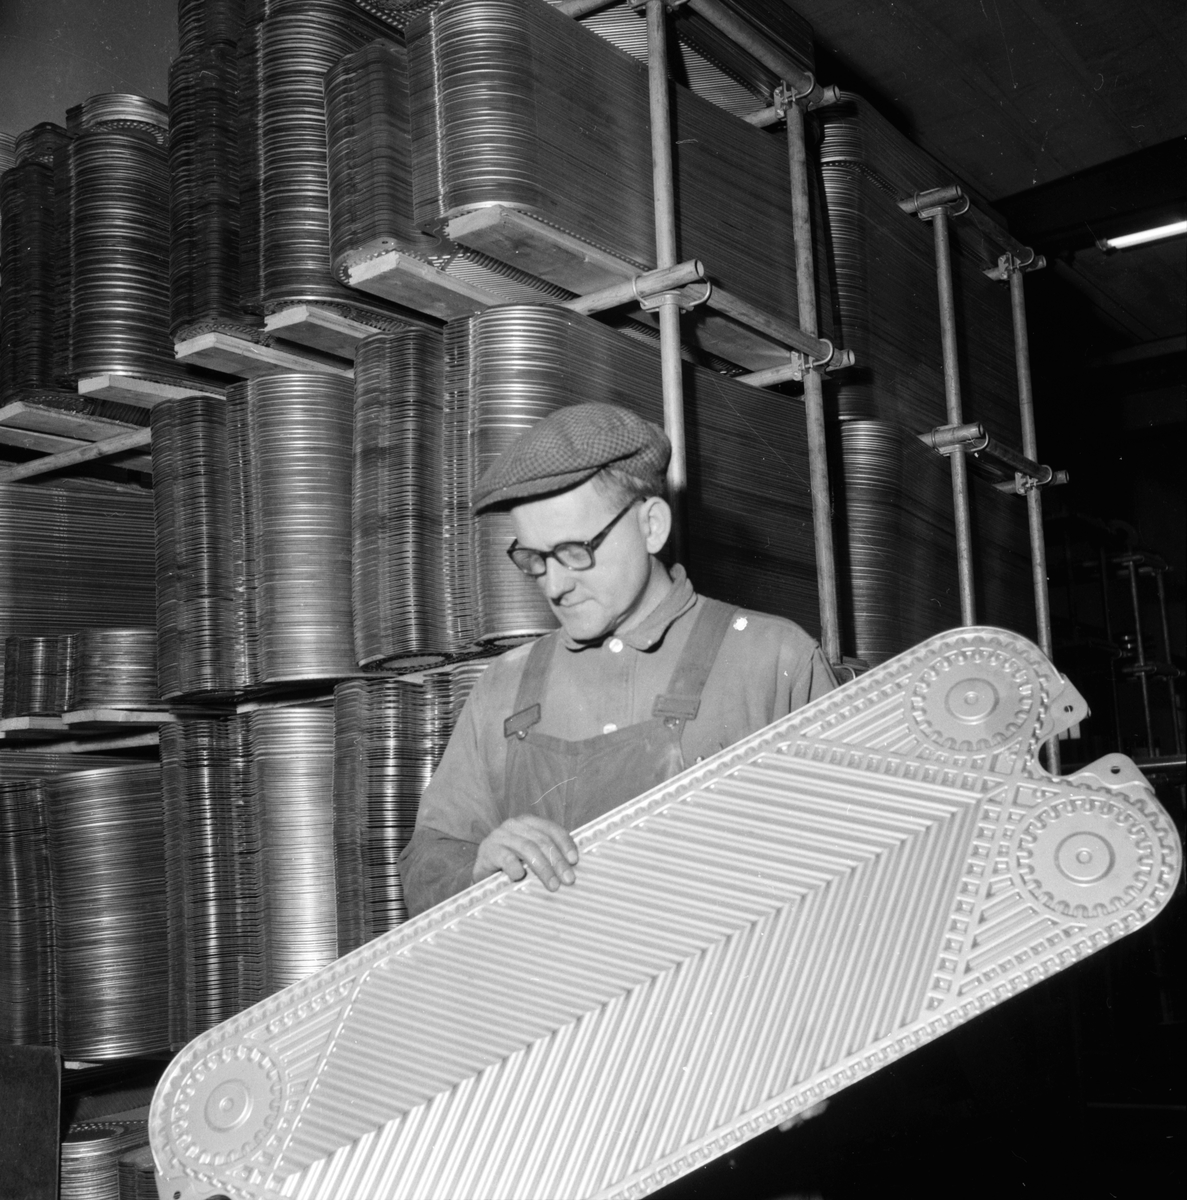 Lingbo verkstäder.
Erland Hansson visar en"trettiotvåans platta" till värmeväxlare. De stansas i Rosenblads verkstad i Ulfsunda i en press, som är Skandinaviens största i sitt slag. Trycket är på 12,000 ton och pressningen sker mot en hårdgummiplatta för att få "mjuka" kurvor i godset.
13/11 1958